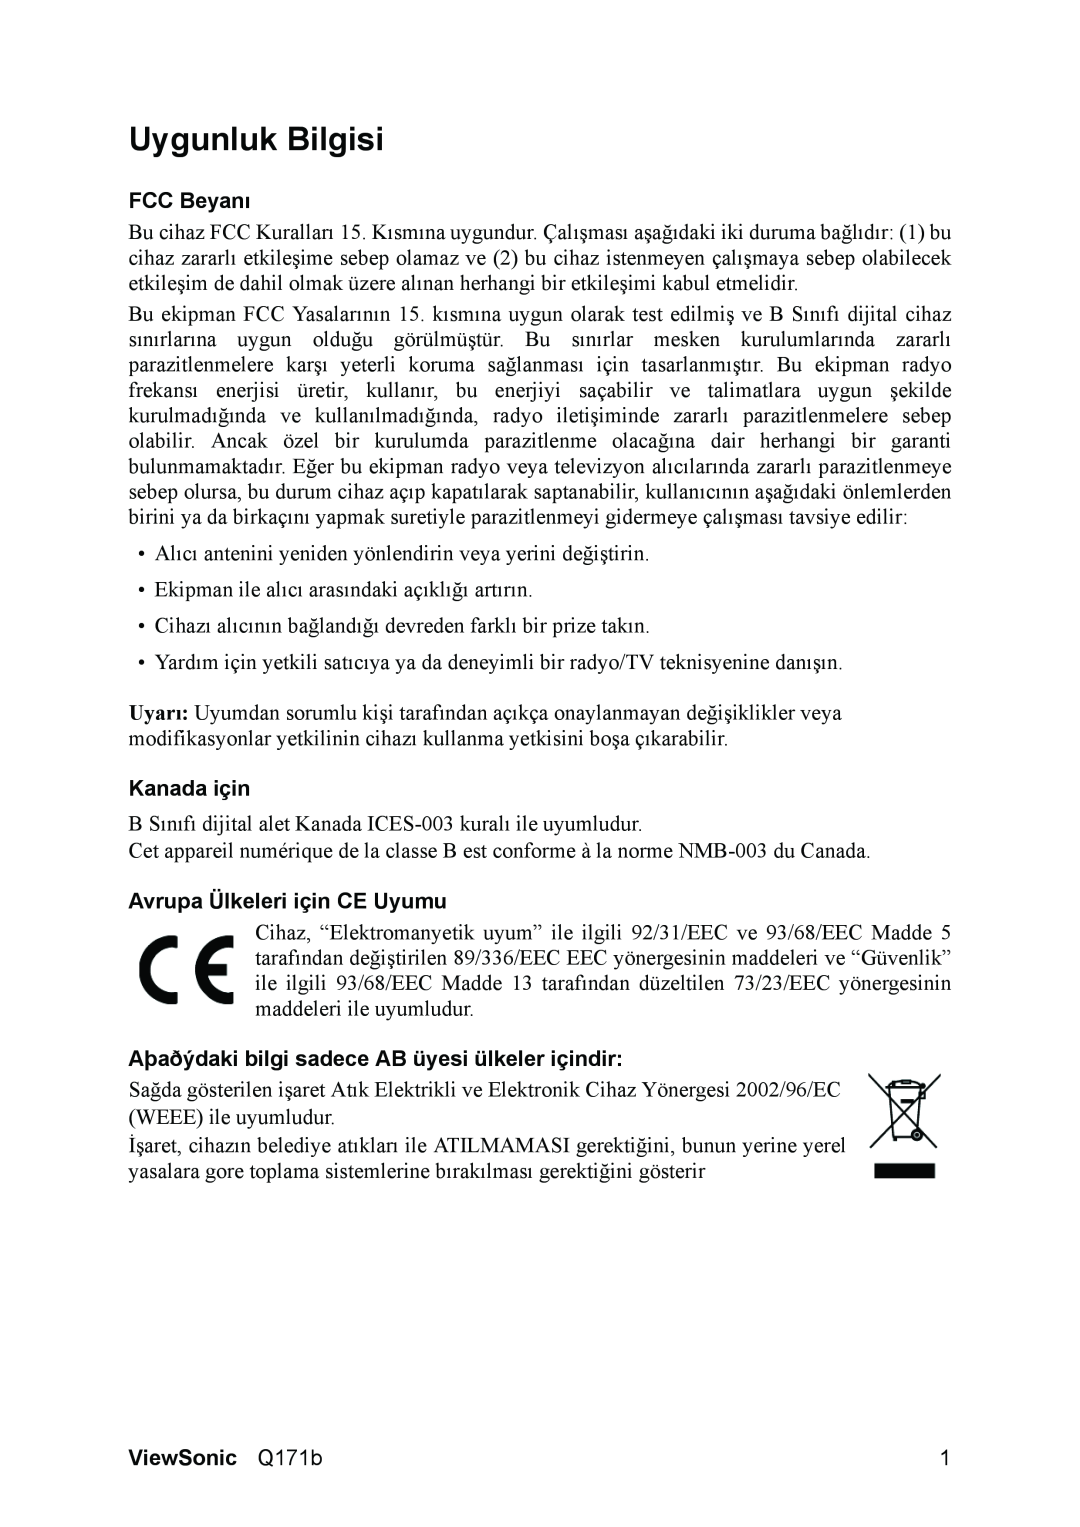 ViewSonic Q171B manual Uygunluk Bilgisi, FCC Beyanı, Kanada için, Avrupa Ülkeleri için CE Uyumu, ViewSonic Q171b 